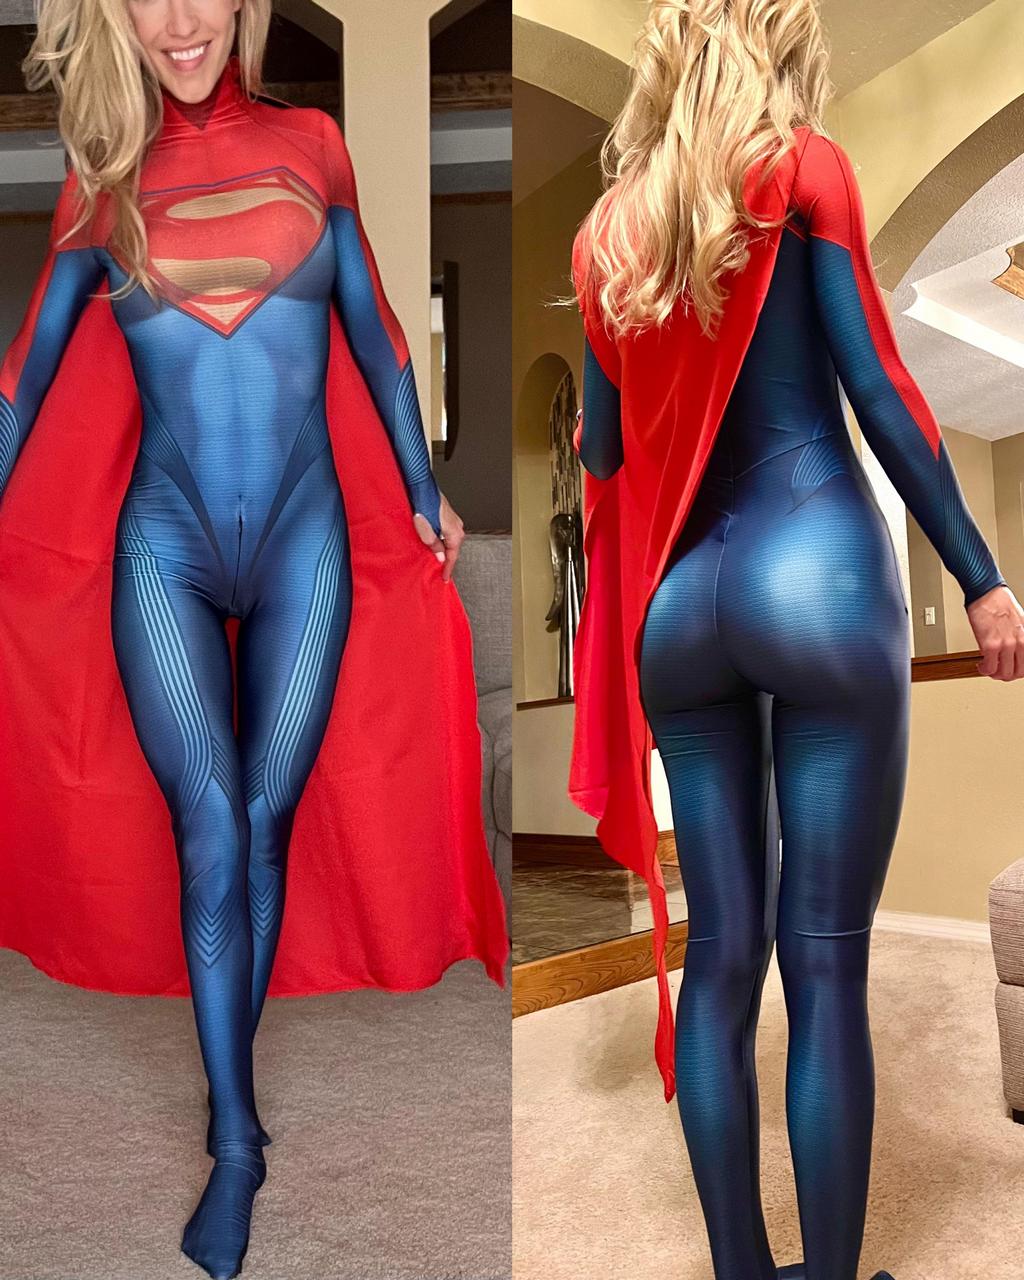 Supergirl By Petiteblondeme